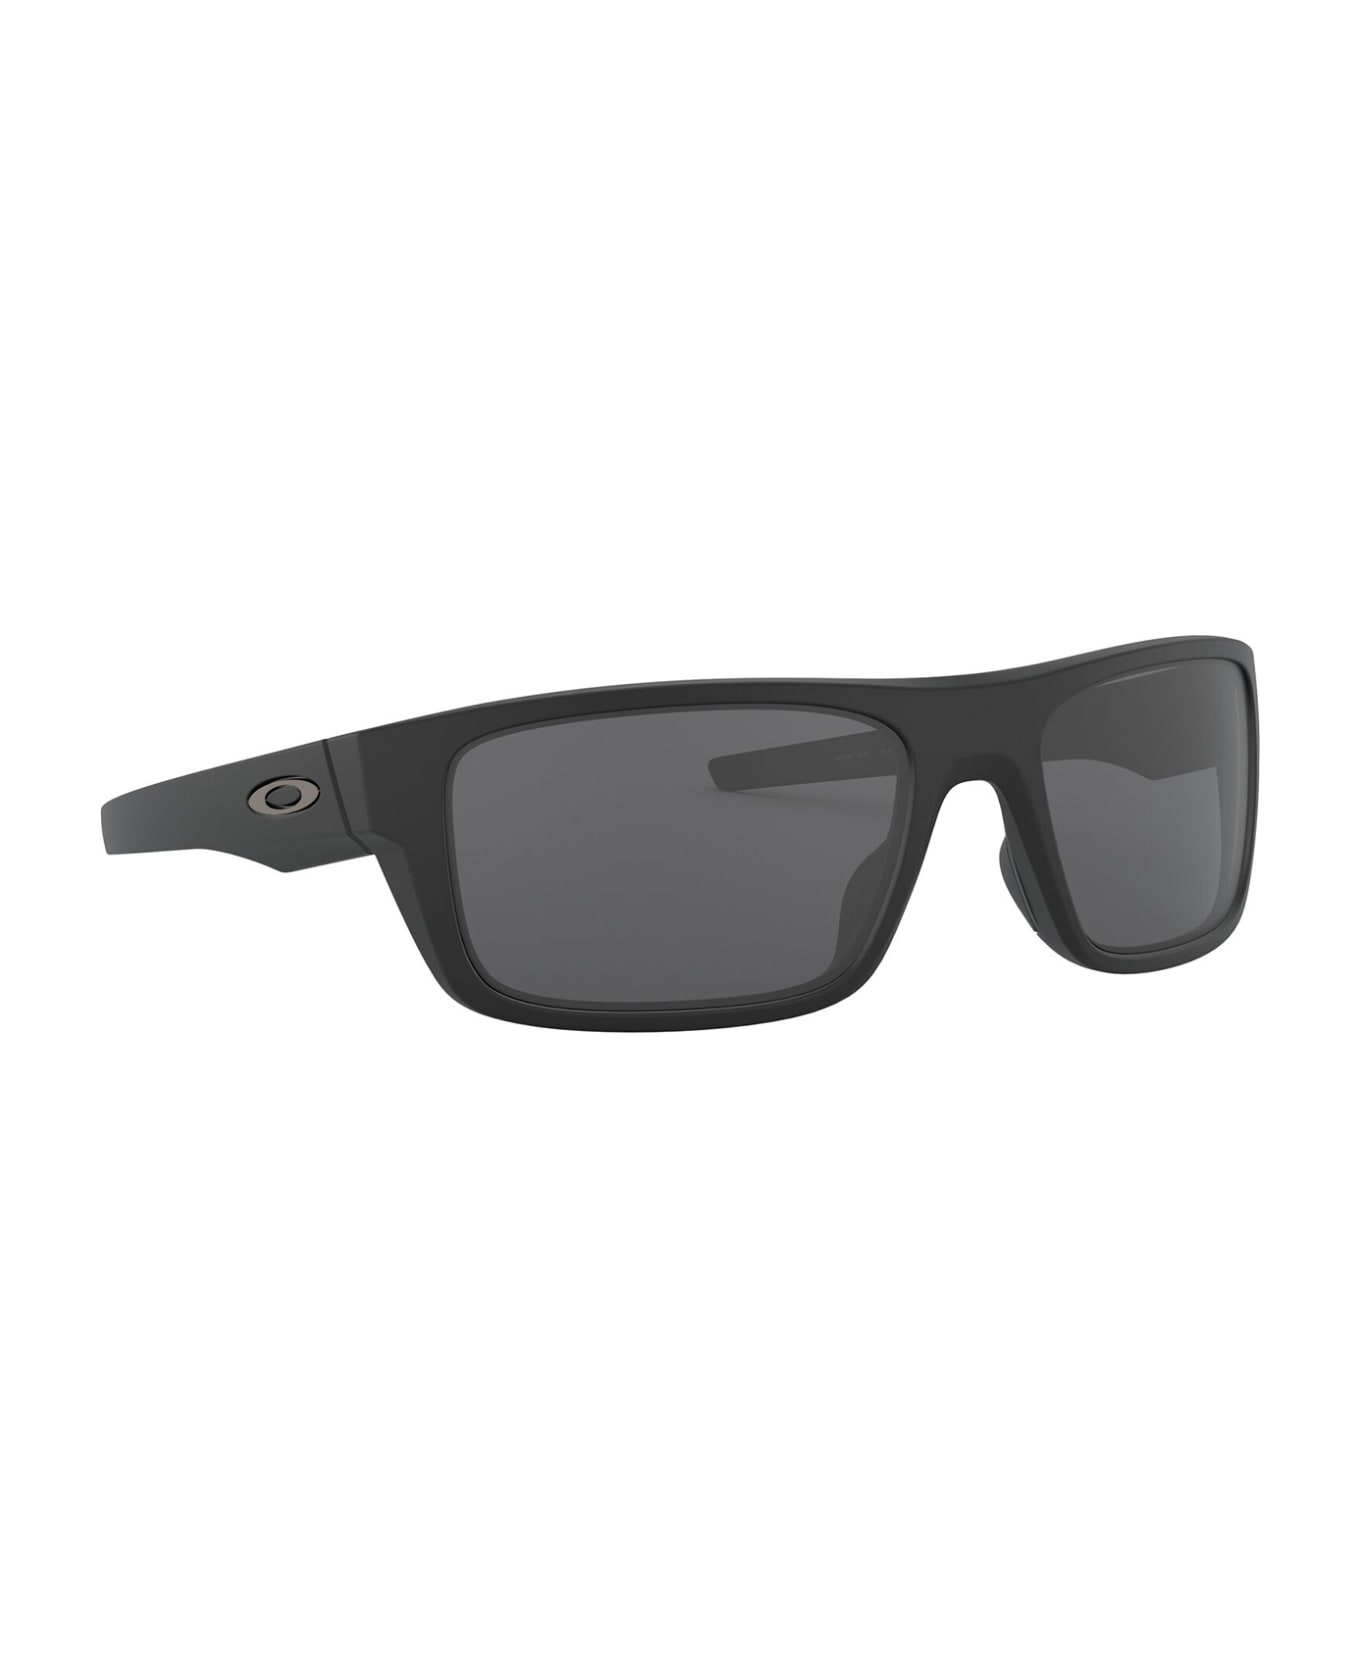 Oakley Oo9367 Matte Black Sunglasses - Matte Black